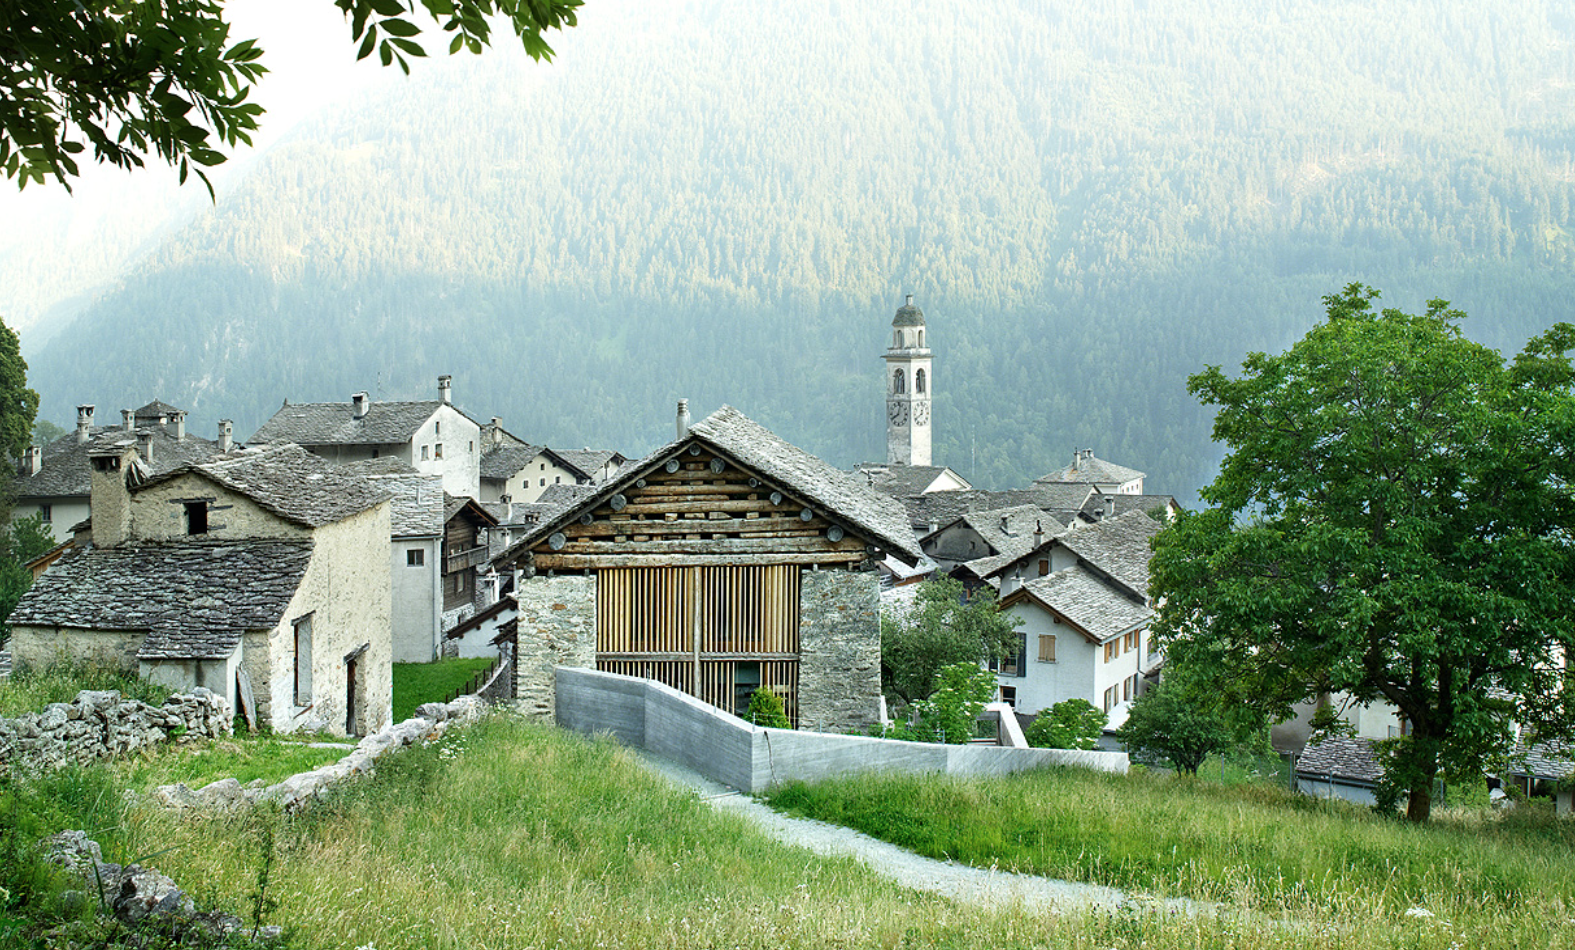 Village alpins avec des bâtiments en pierre